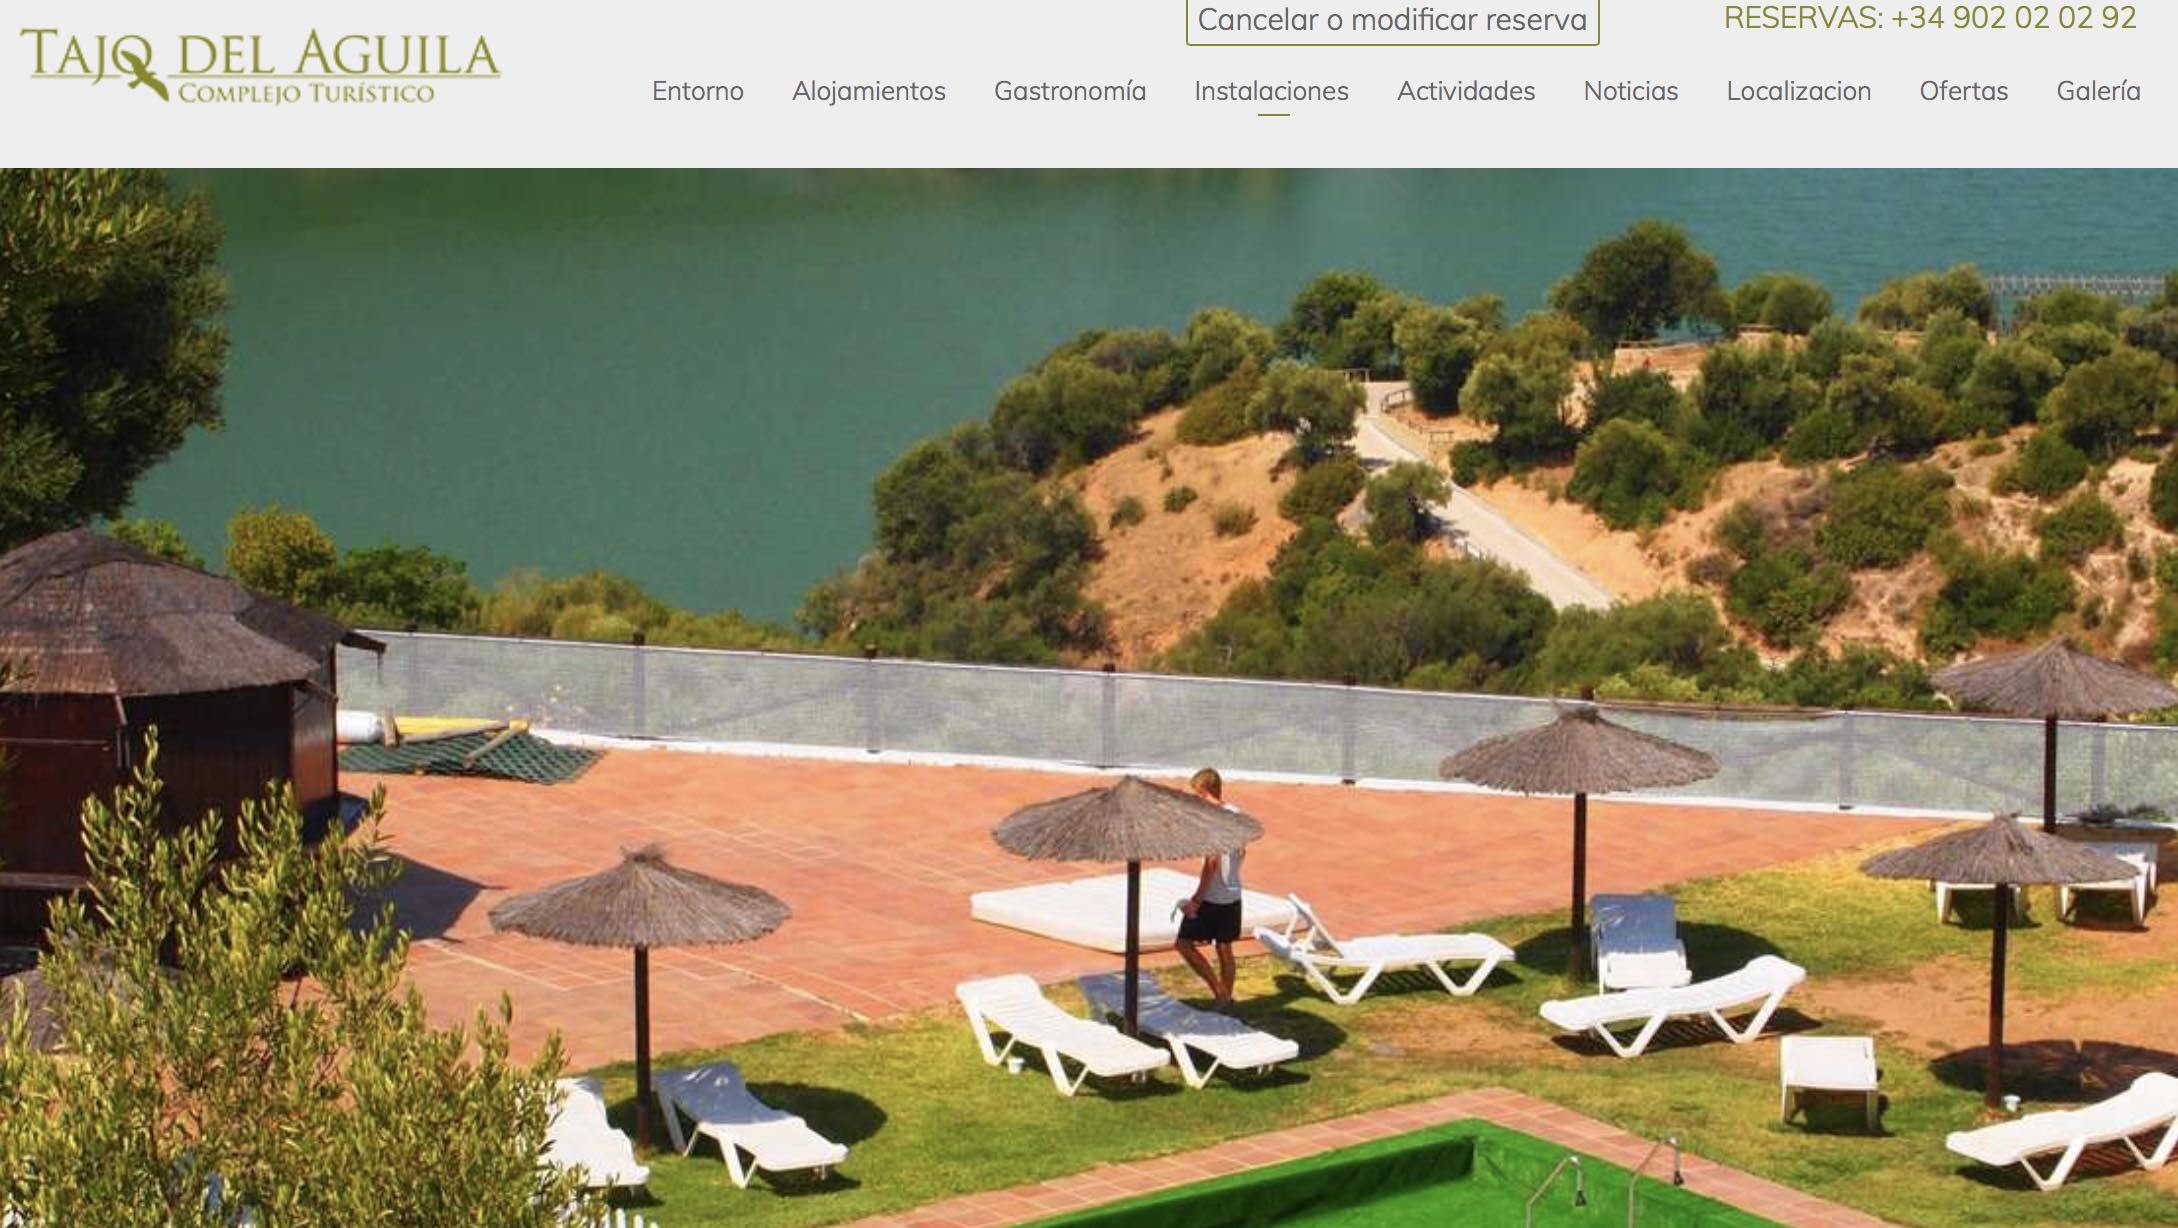 Captura de la web de reservas del complejo turístico Tajo del Águila, en Algar. Hoy en día, clausurada.